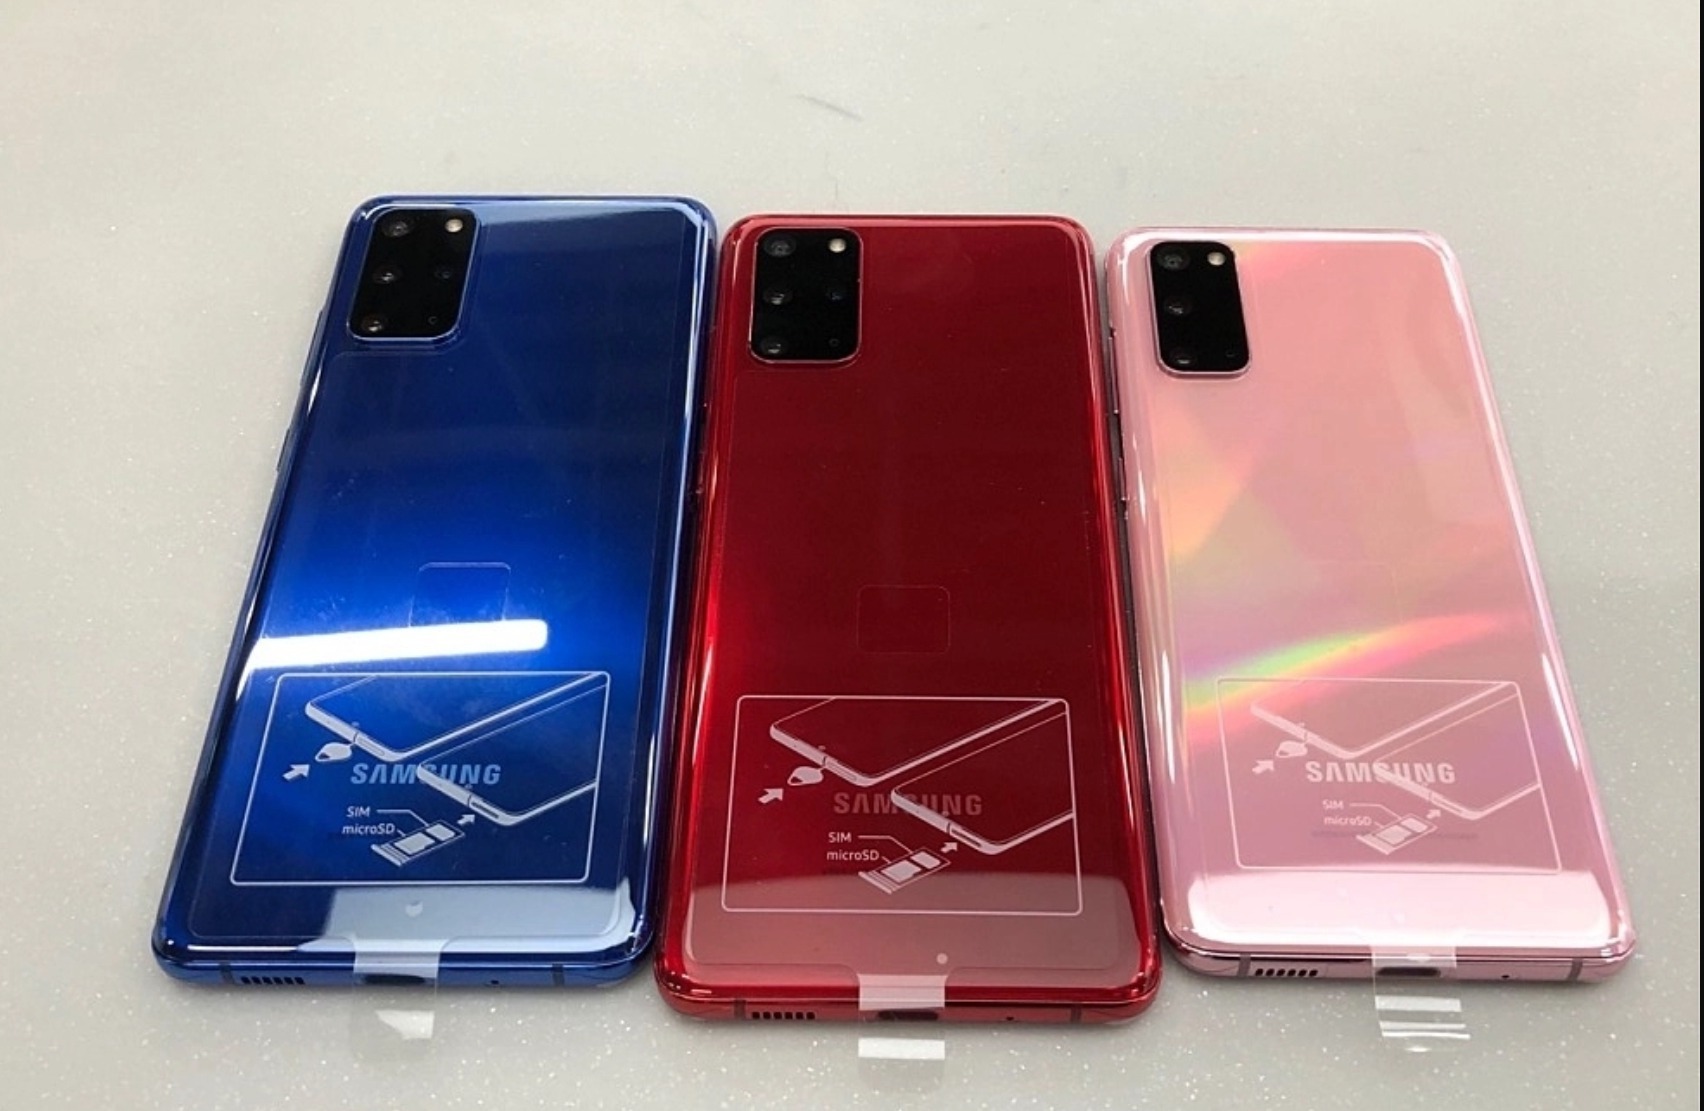 Samsung Galaxy S20 in bianco è attualmente disponibile solo in Corea e potrebbe presto essere affiancato dai modelli blu e rosso thumbnail